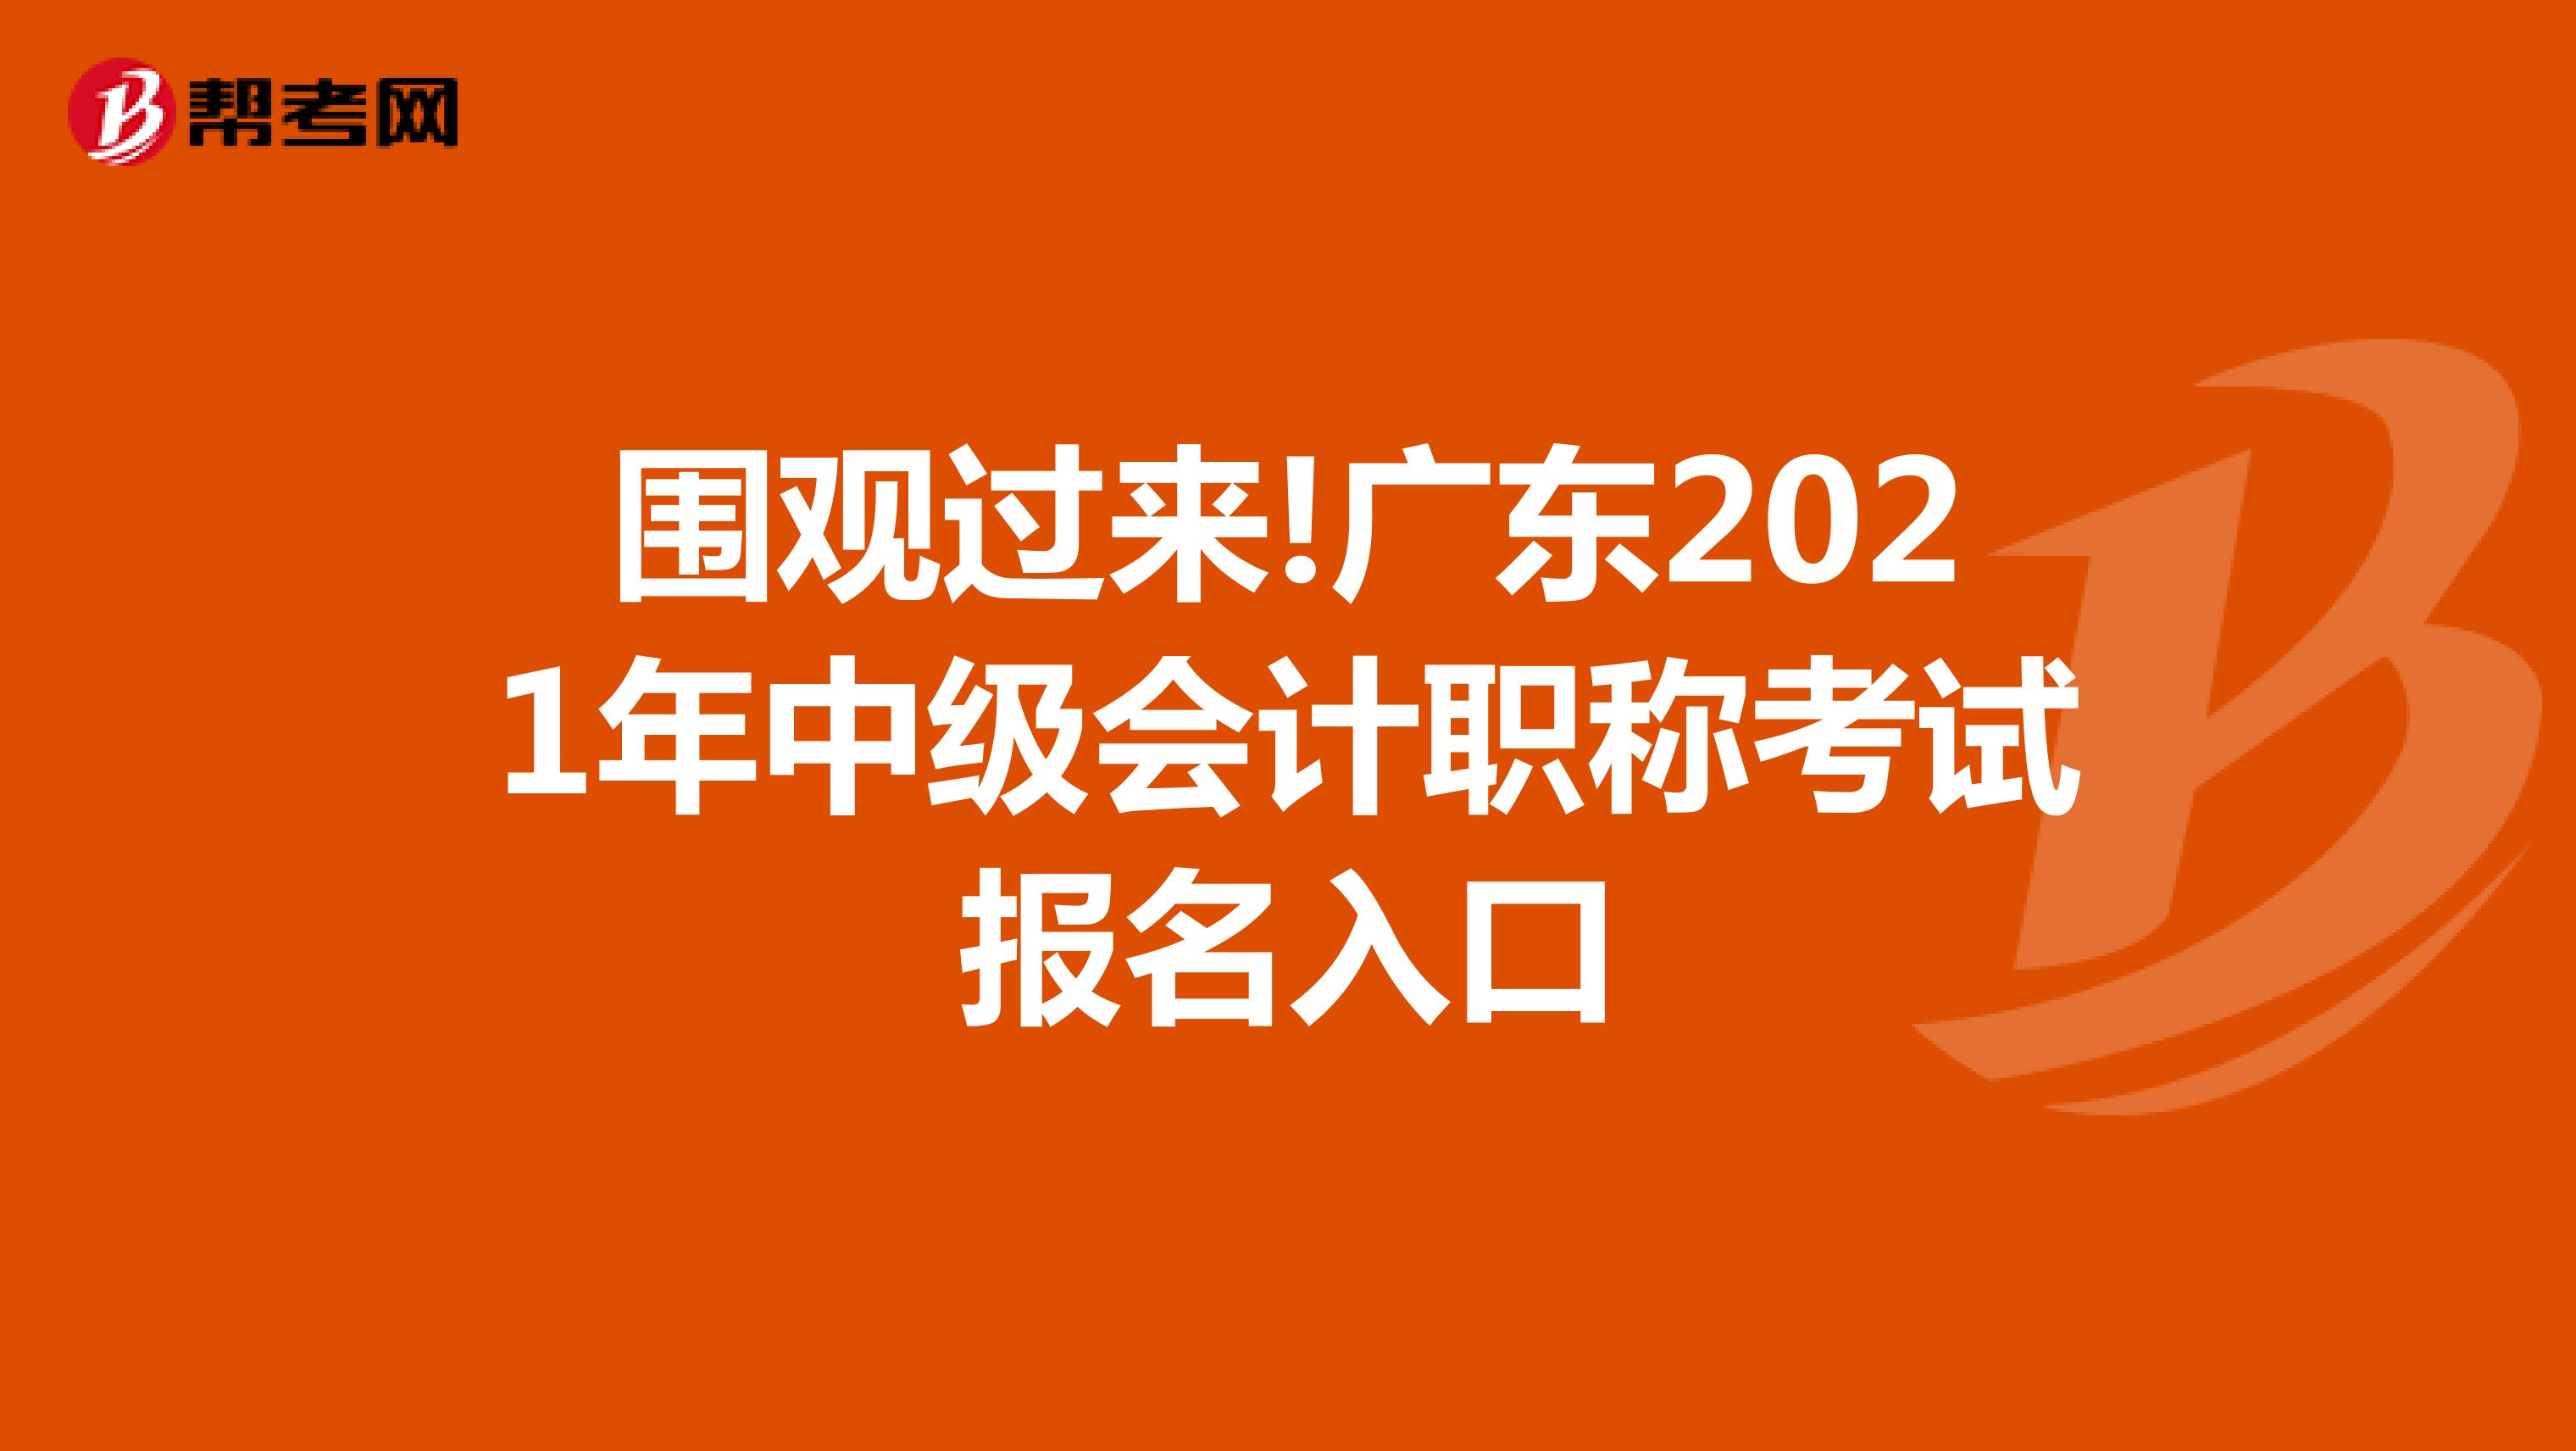 围观过来!广东2021年中级会计职称考试报名入口